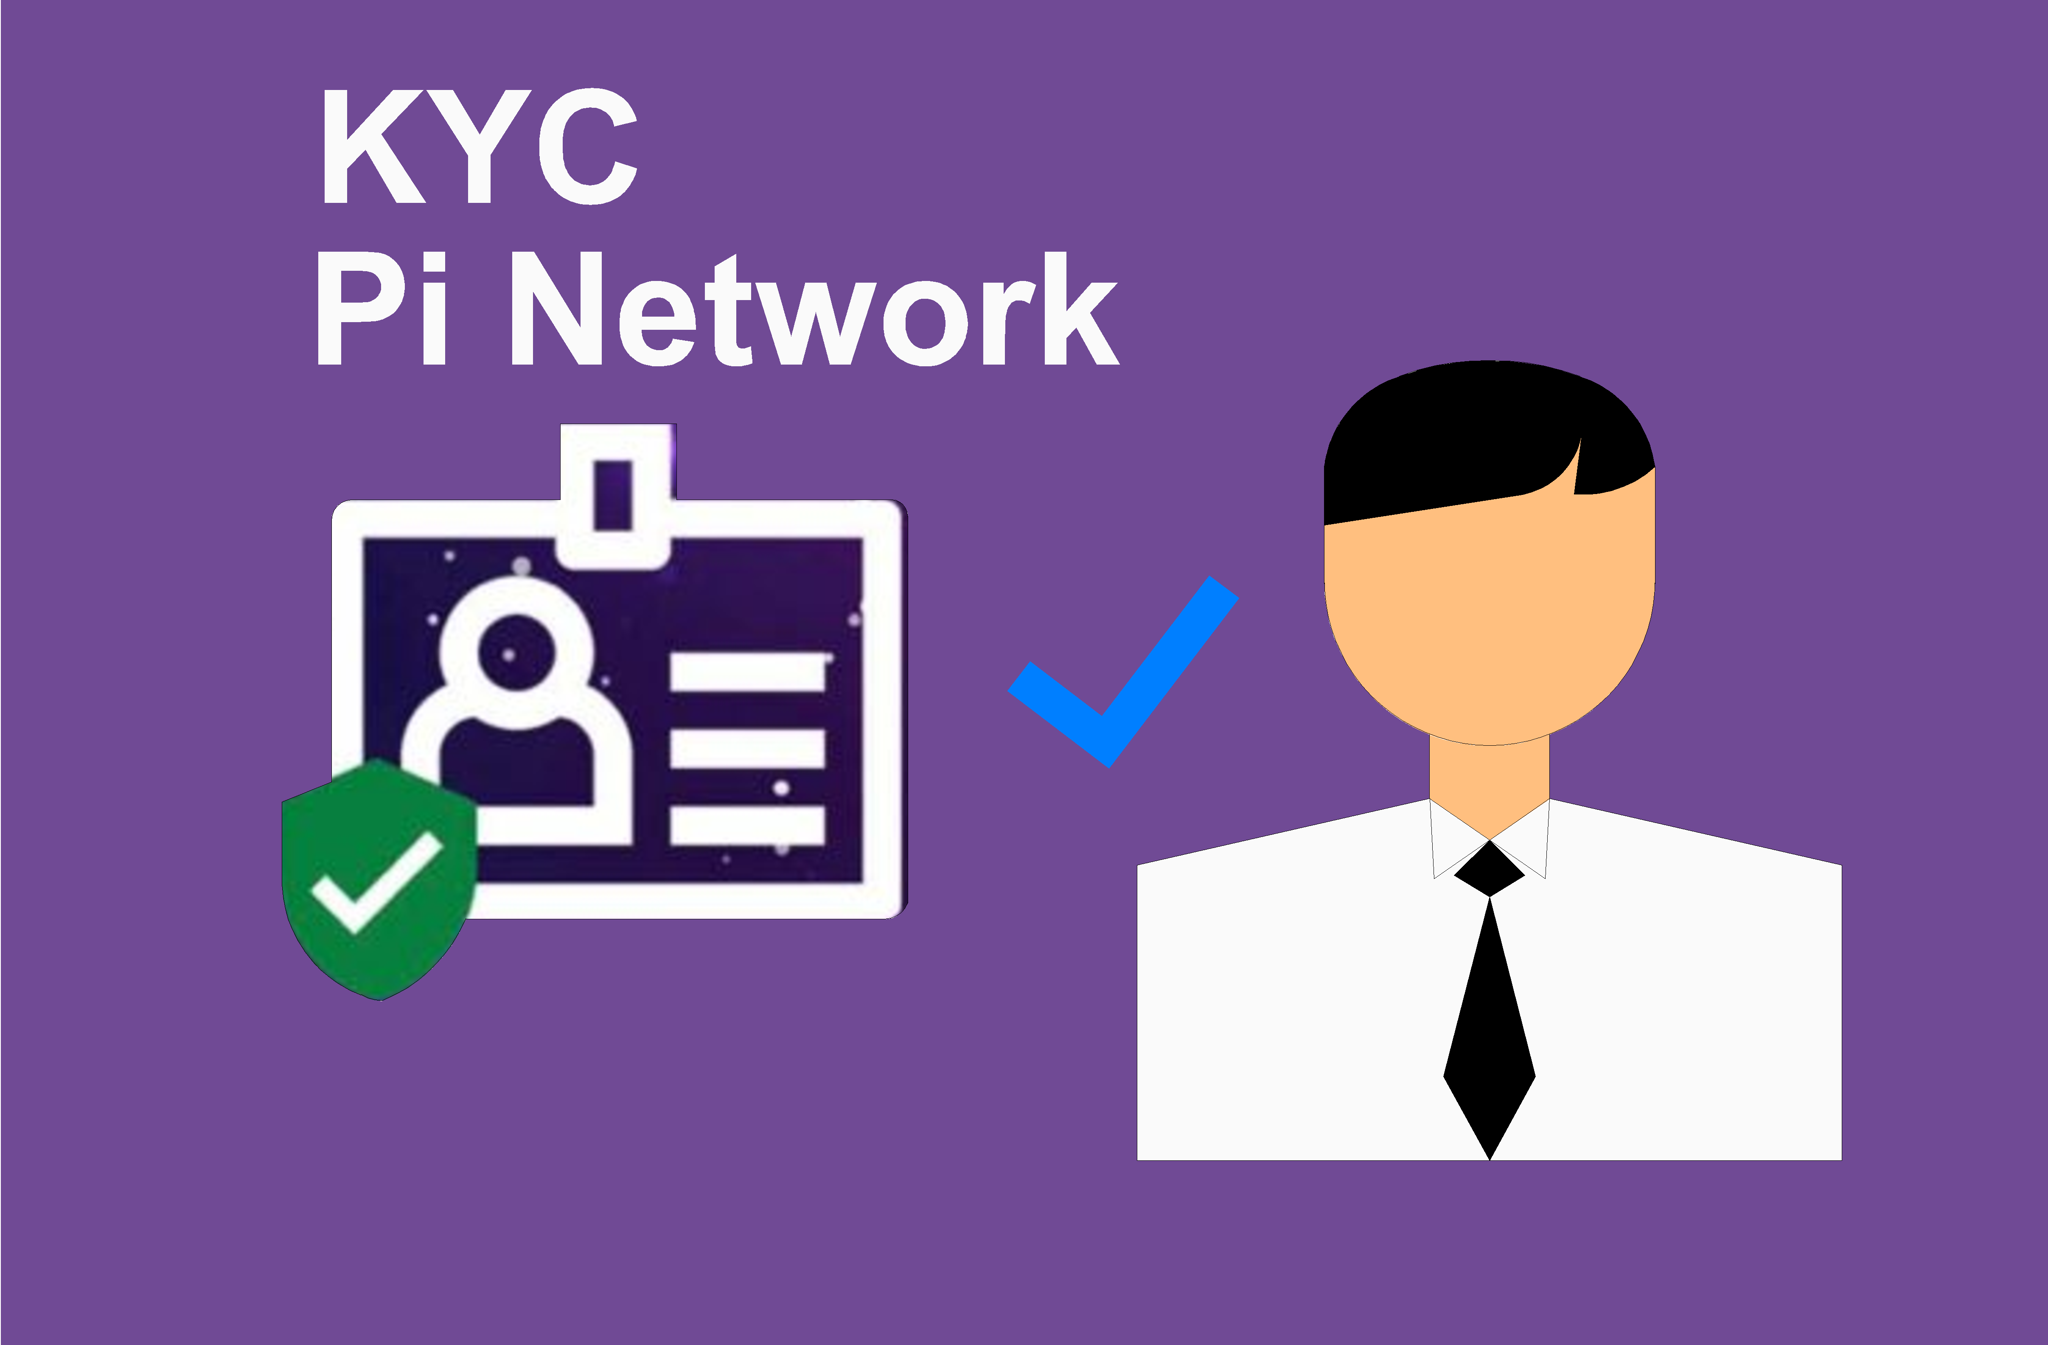 KYC Pi Network - Xác minh danh tính tài khoản Pi Network